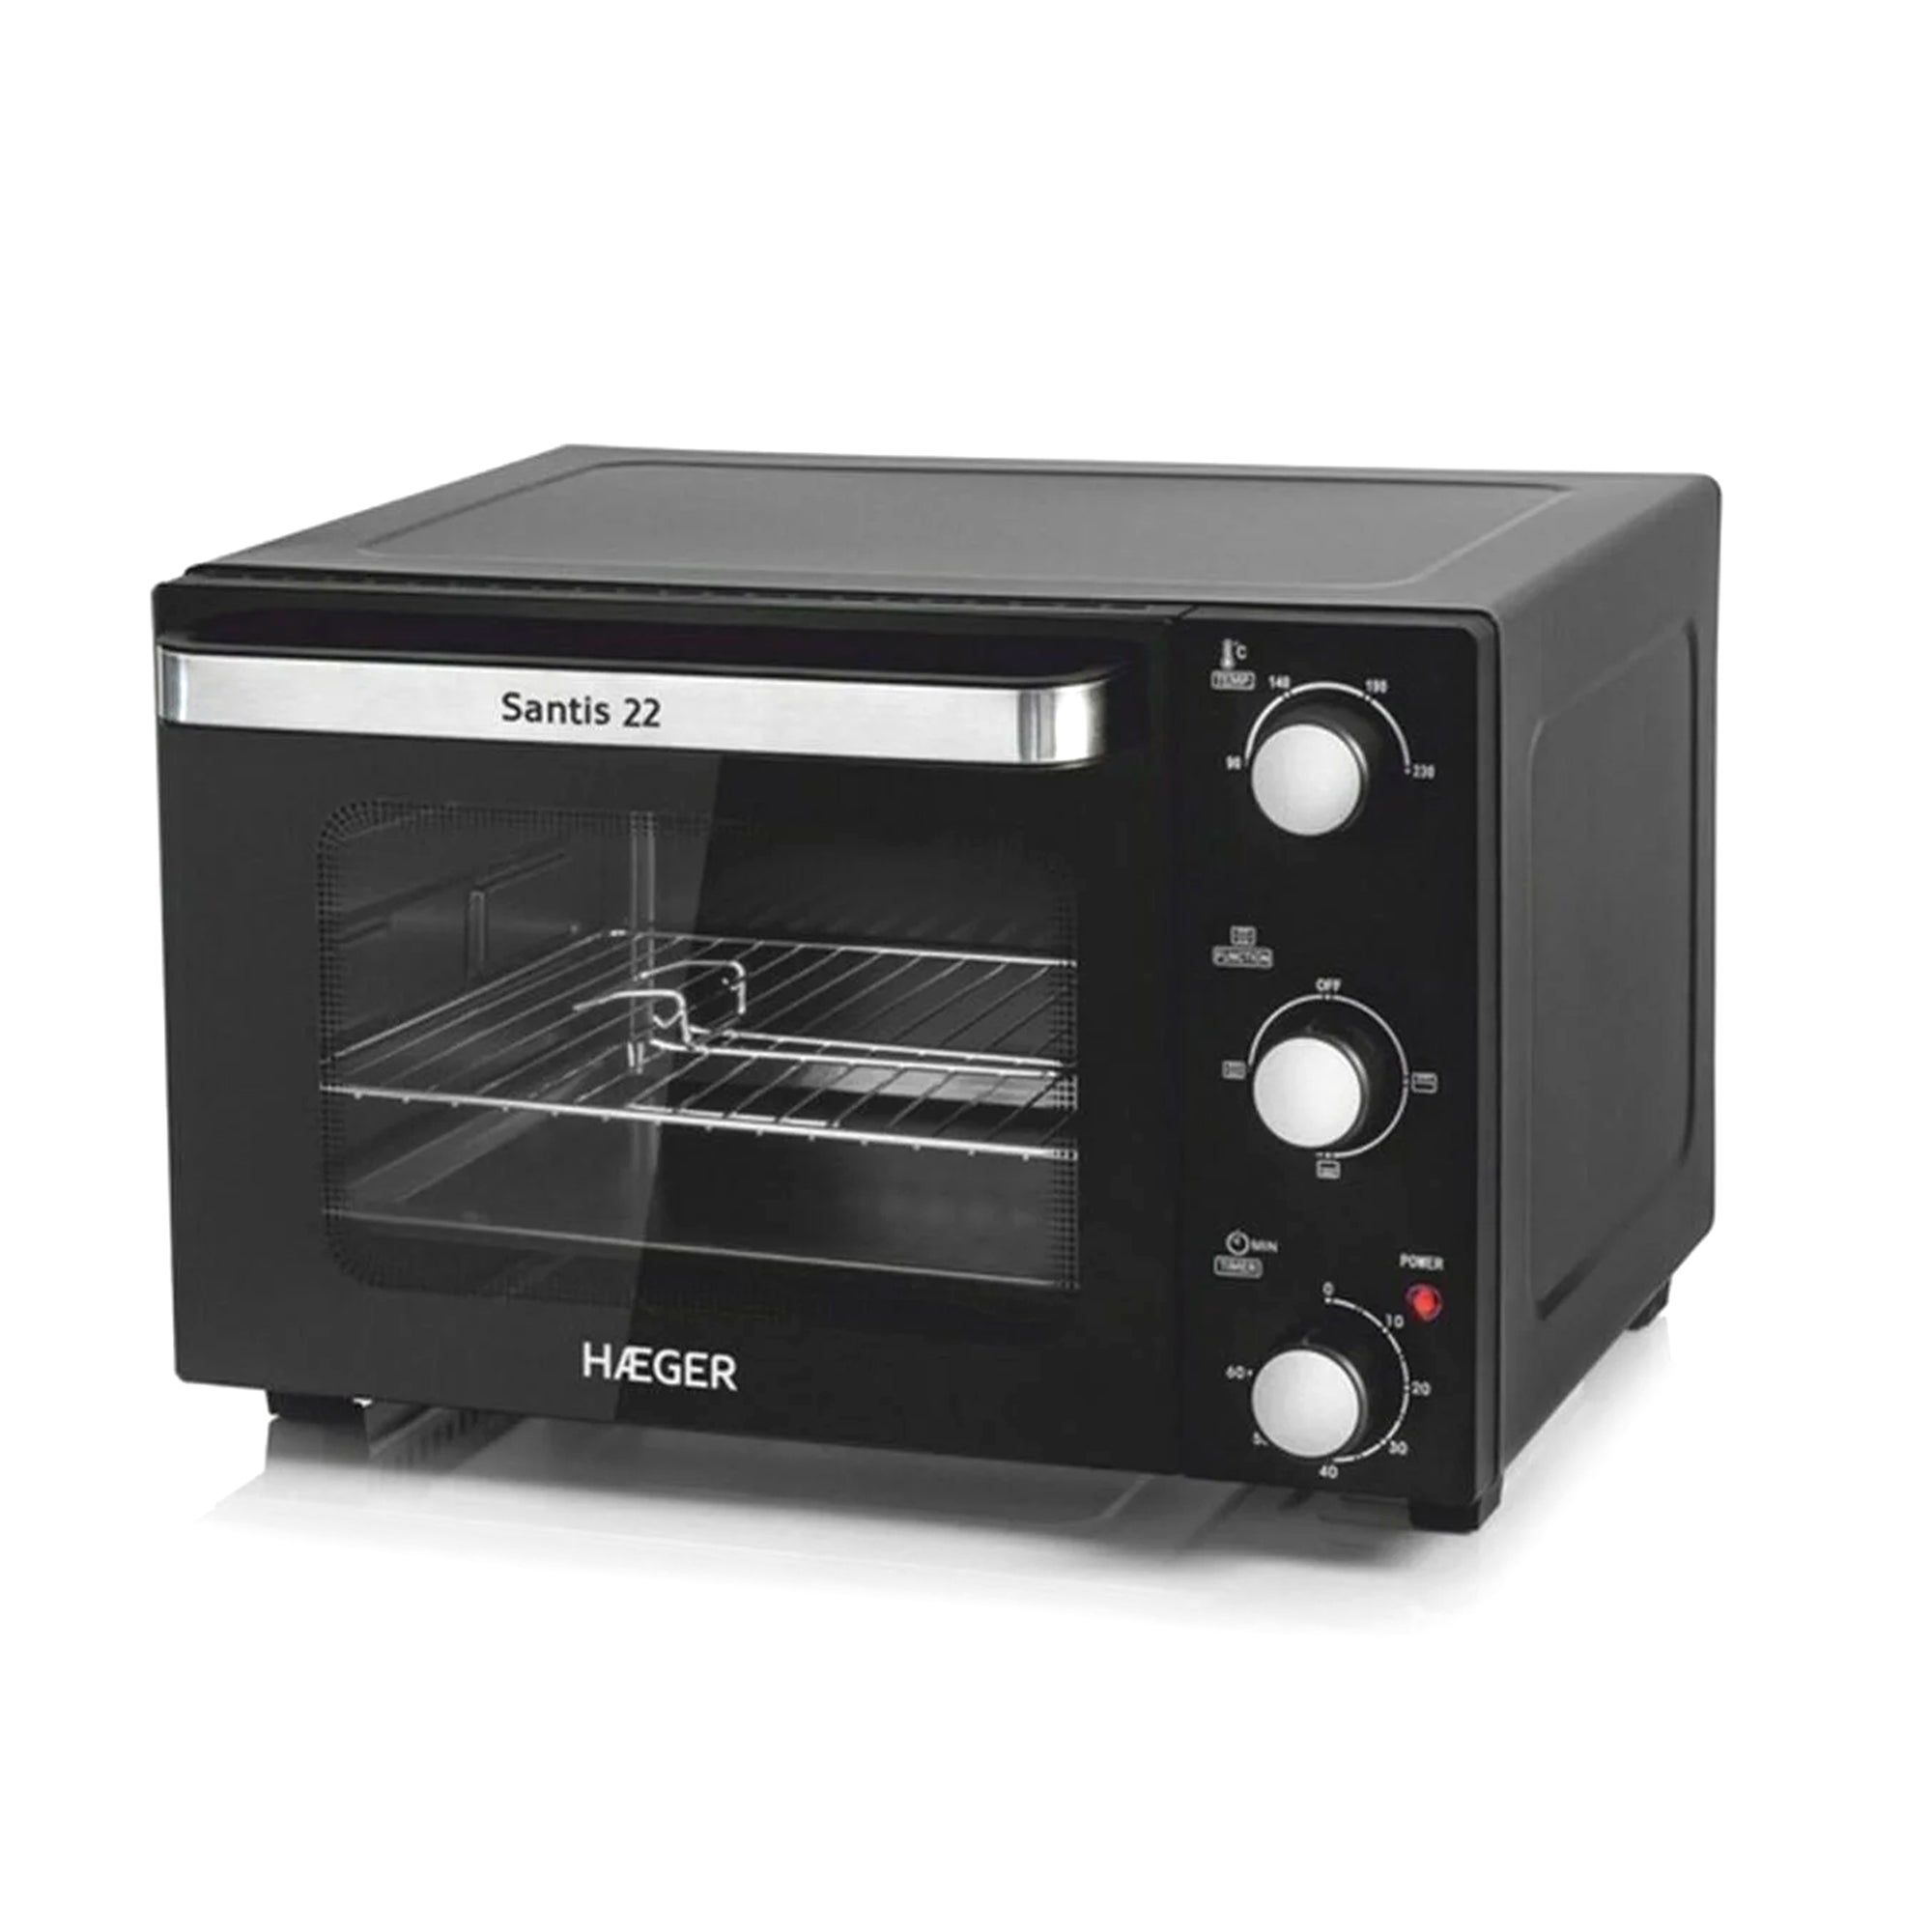 Mini horno  Cecotec Bake & Toast 570, 26 l, 1500W, Luz interior, Piedra  para Pizza y Convección, Negro